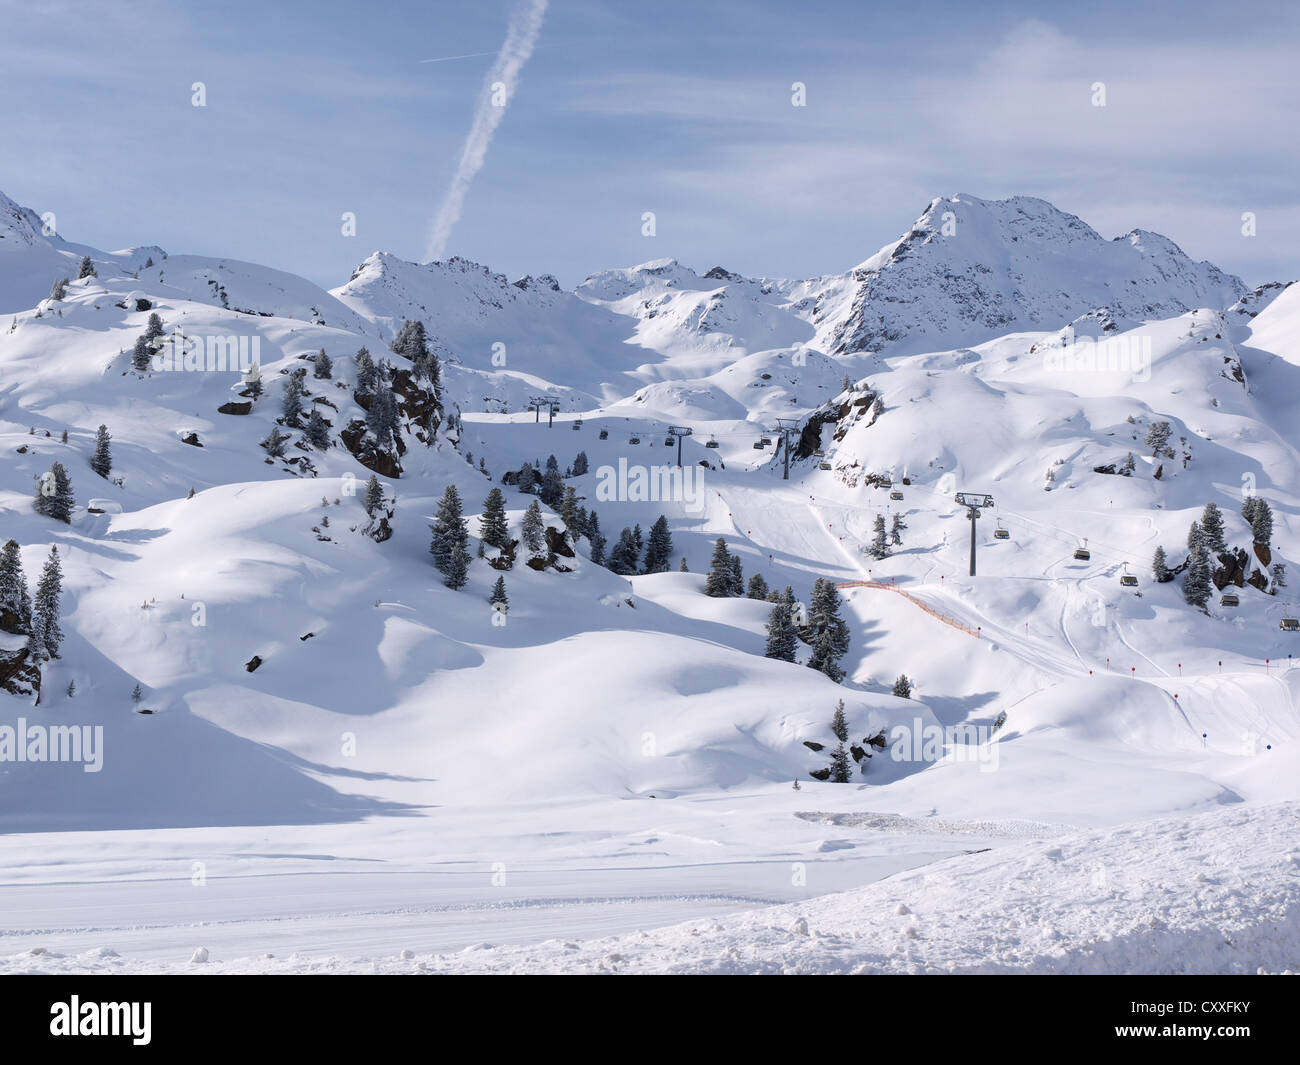 Ski slopes, Kaunertal glacier ski area, Kaunertal, Feichten, Tyrol, Austria, Europe Stock Photo